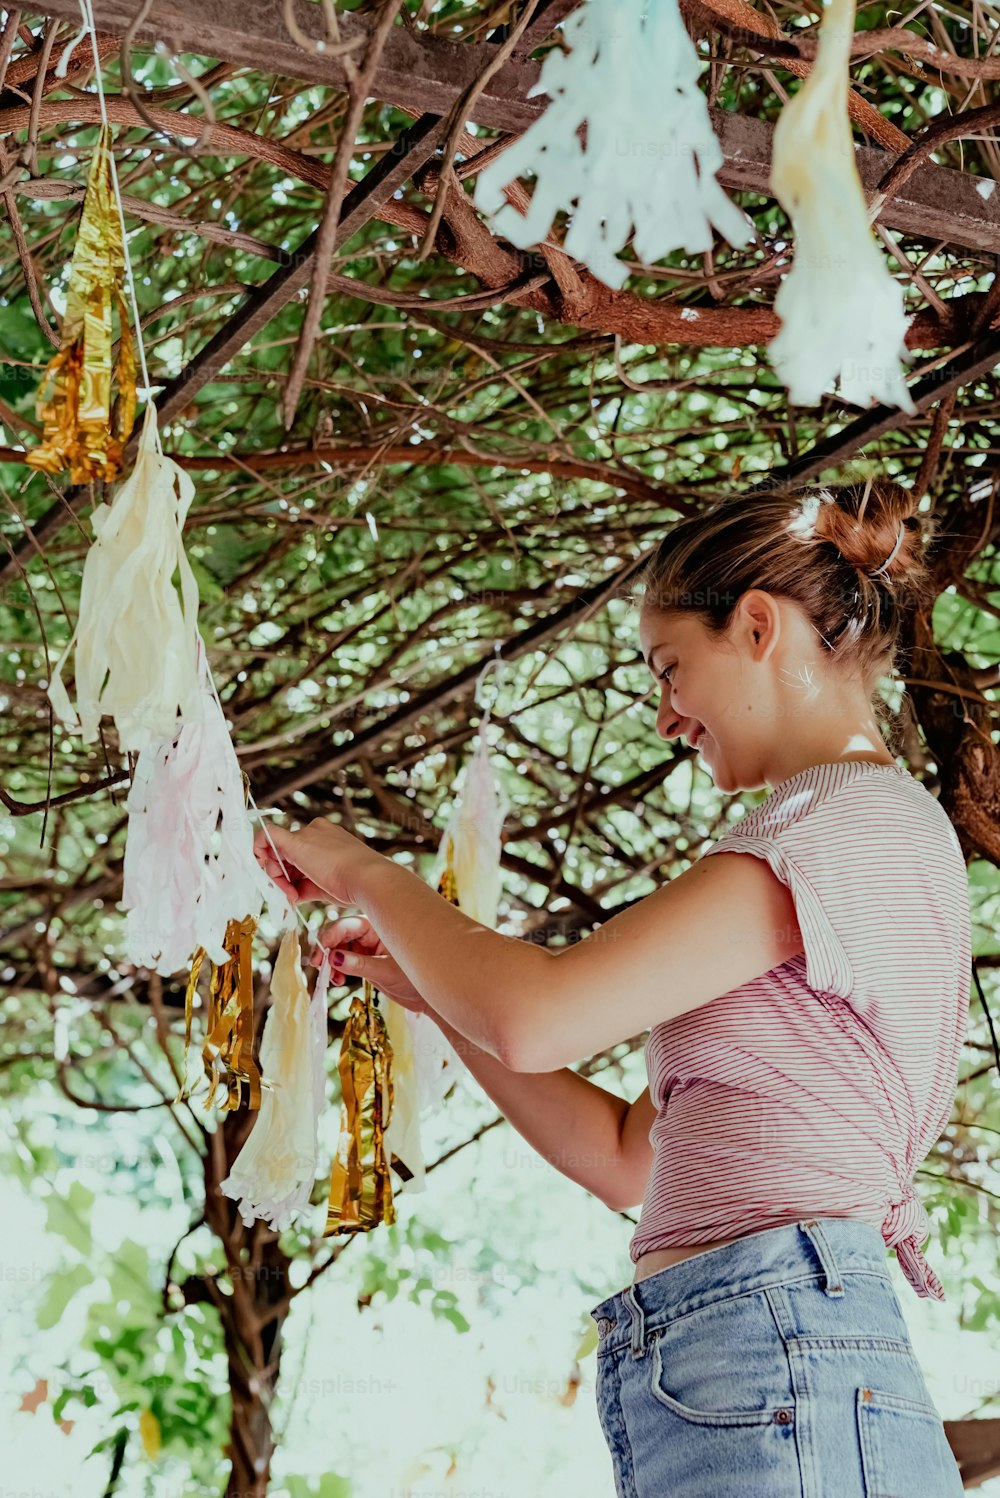 어린 소녀가 나무에 매달린 끈을 잡고 있다